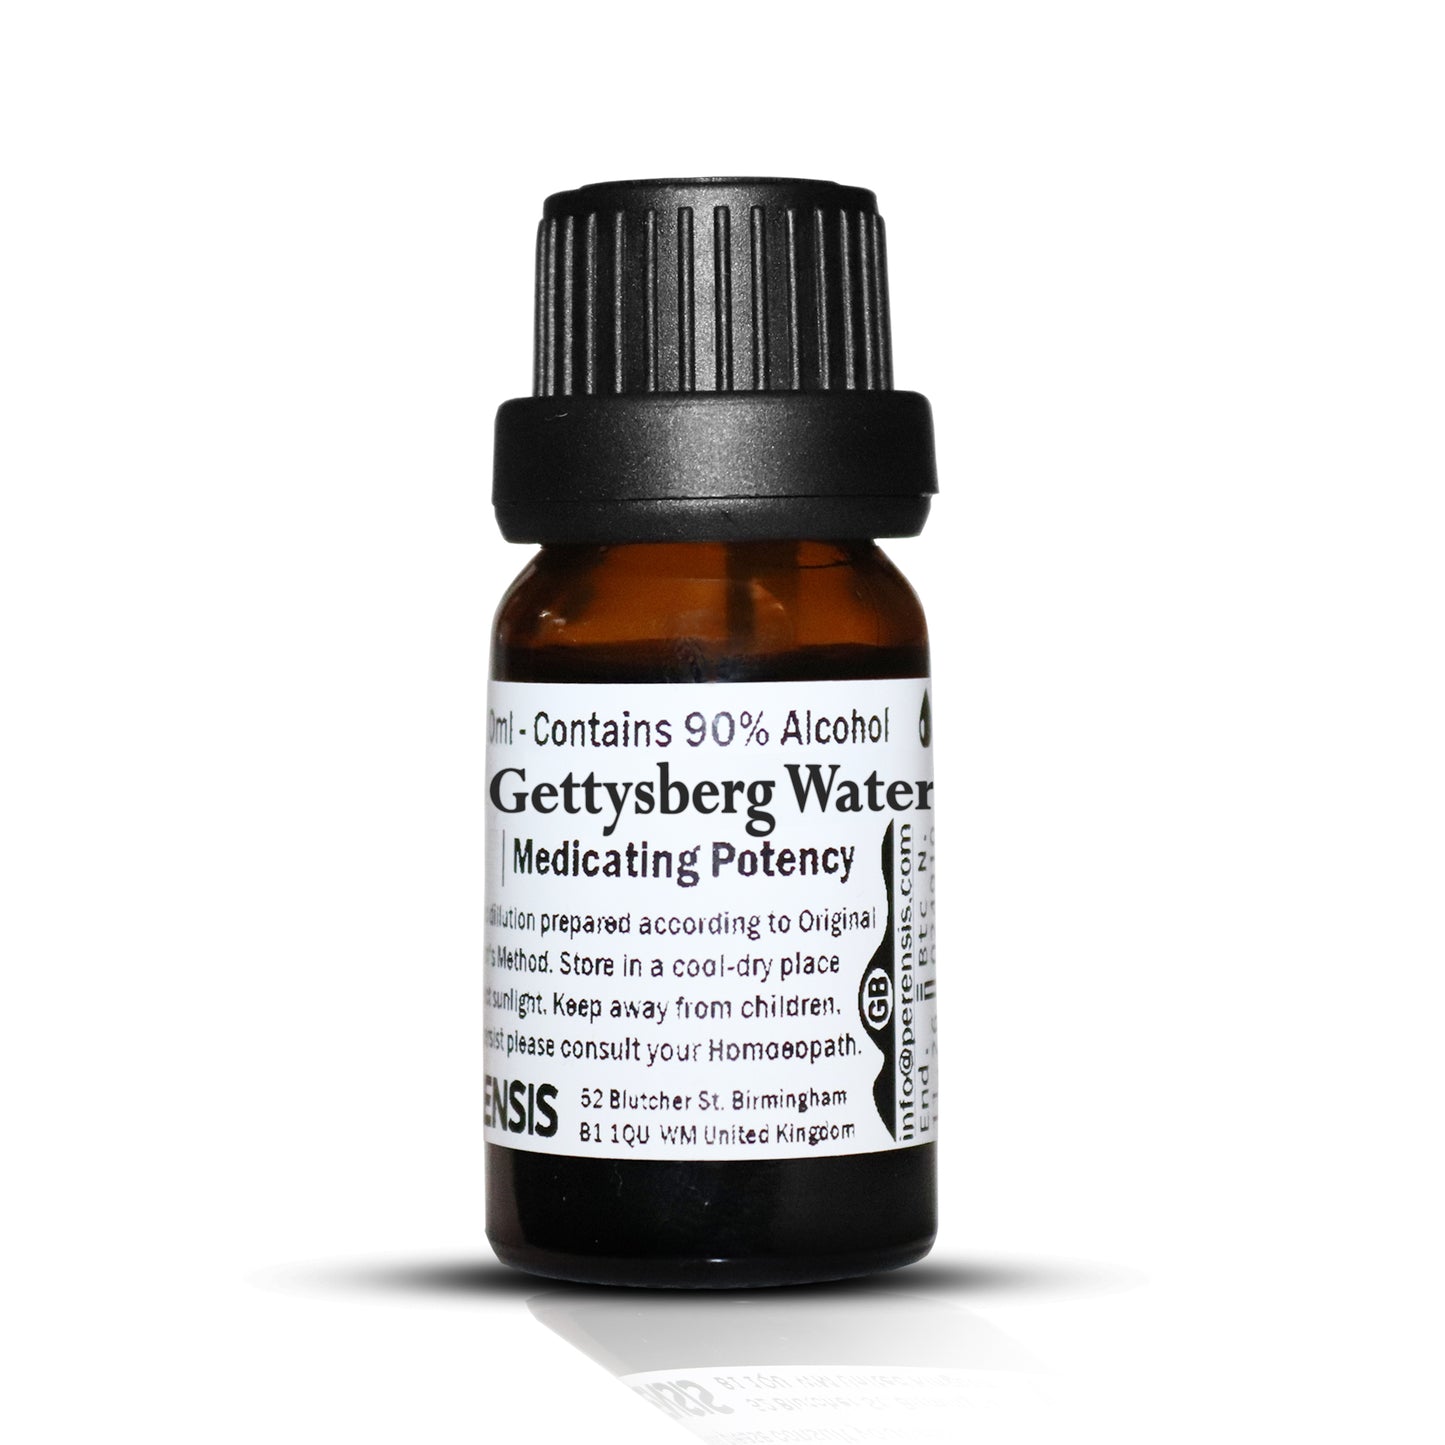 Gettysberg Water